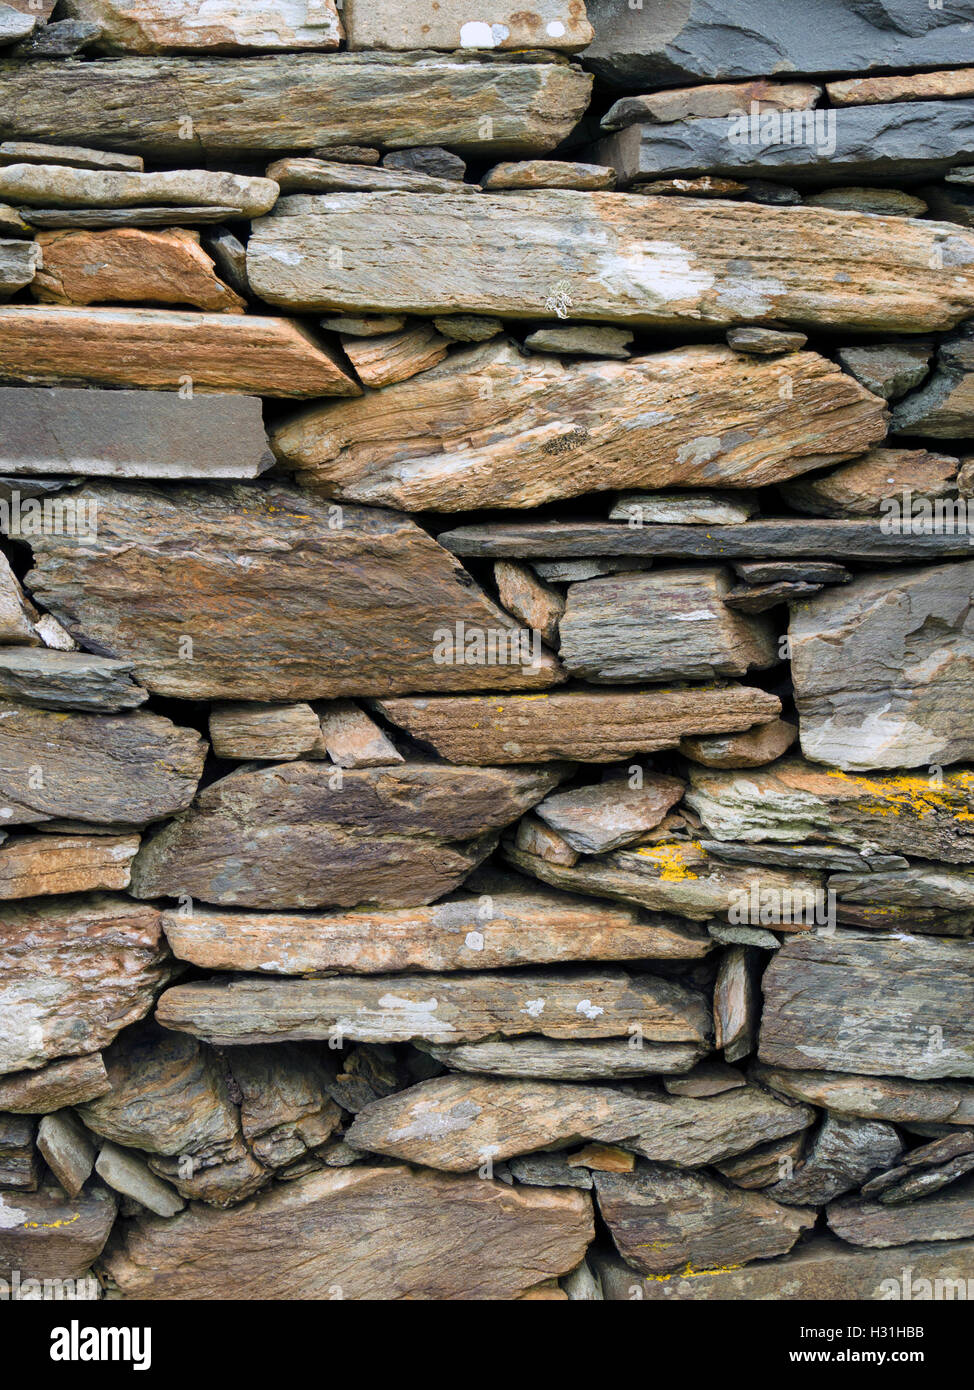 Vieux mur de pierre sèche en ruines croft, village abandonné de Riasg Buidhe, île de Colonsay, Écosse, Royaume-Uni. Banque D'Images